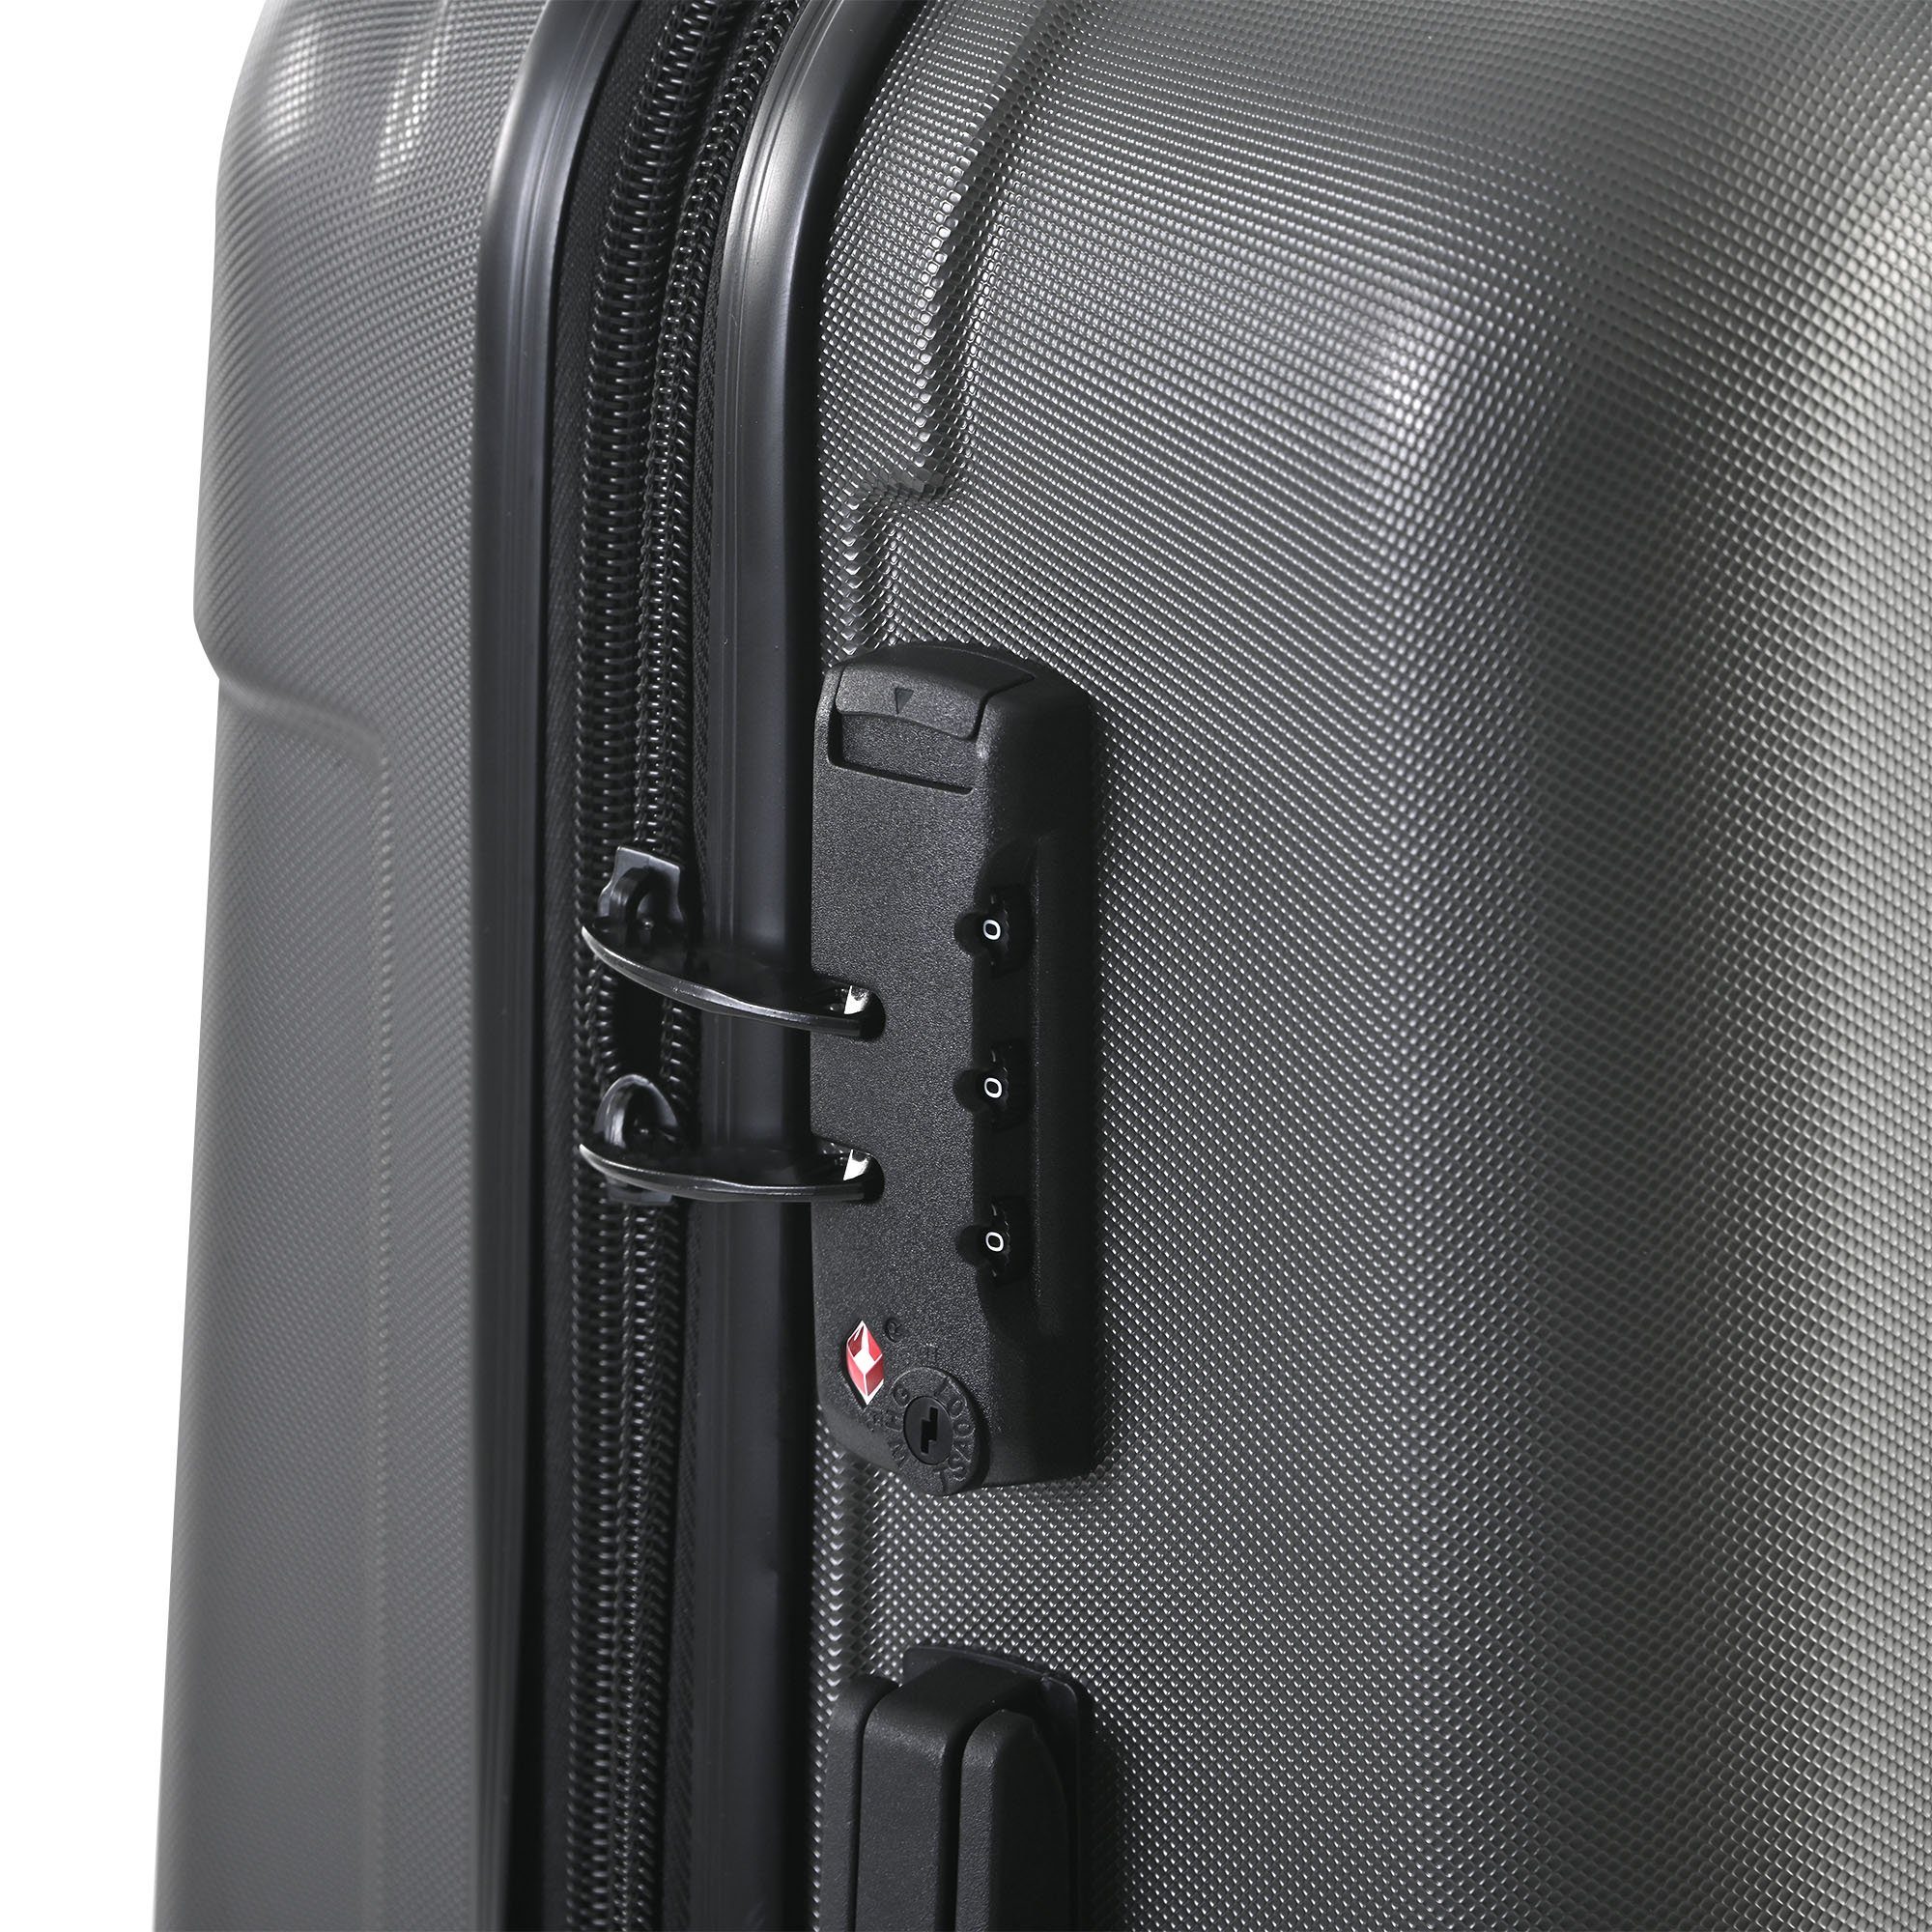 Stauraum, 360-Grad-Drehrollen maximiertem Handgepäckkoffer Kofferset ABS-Material XLHartschalen-Handgepäck und mit EXTSUD Spinnerräder TSA-Schloss Grau